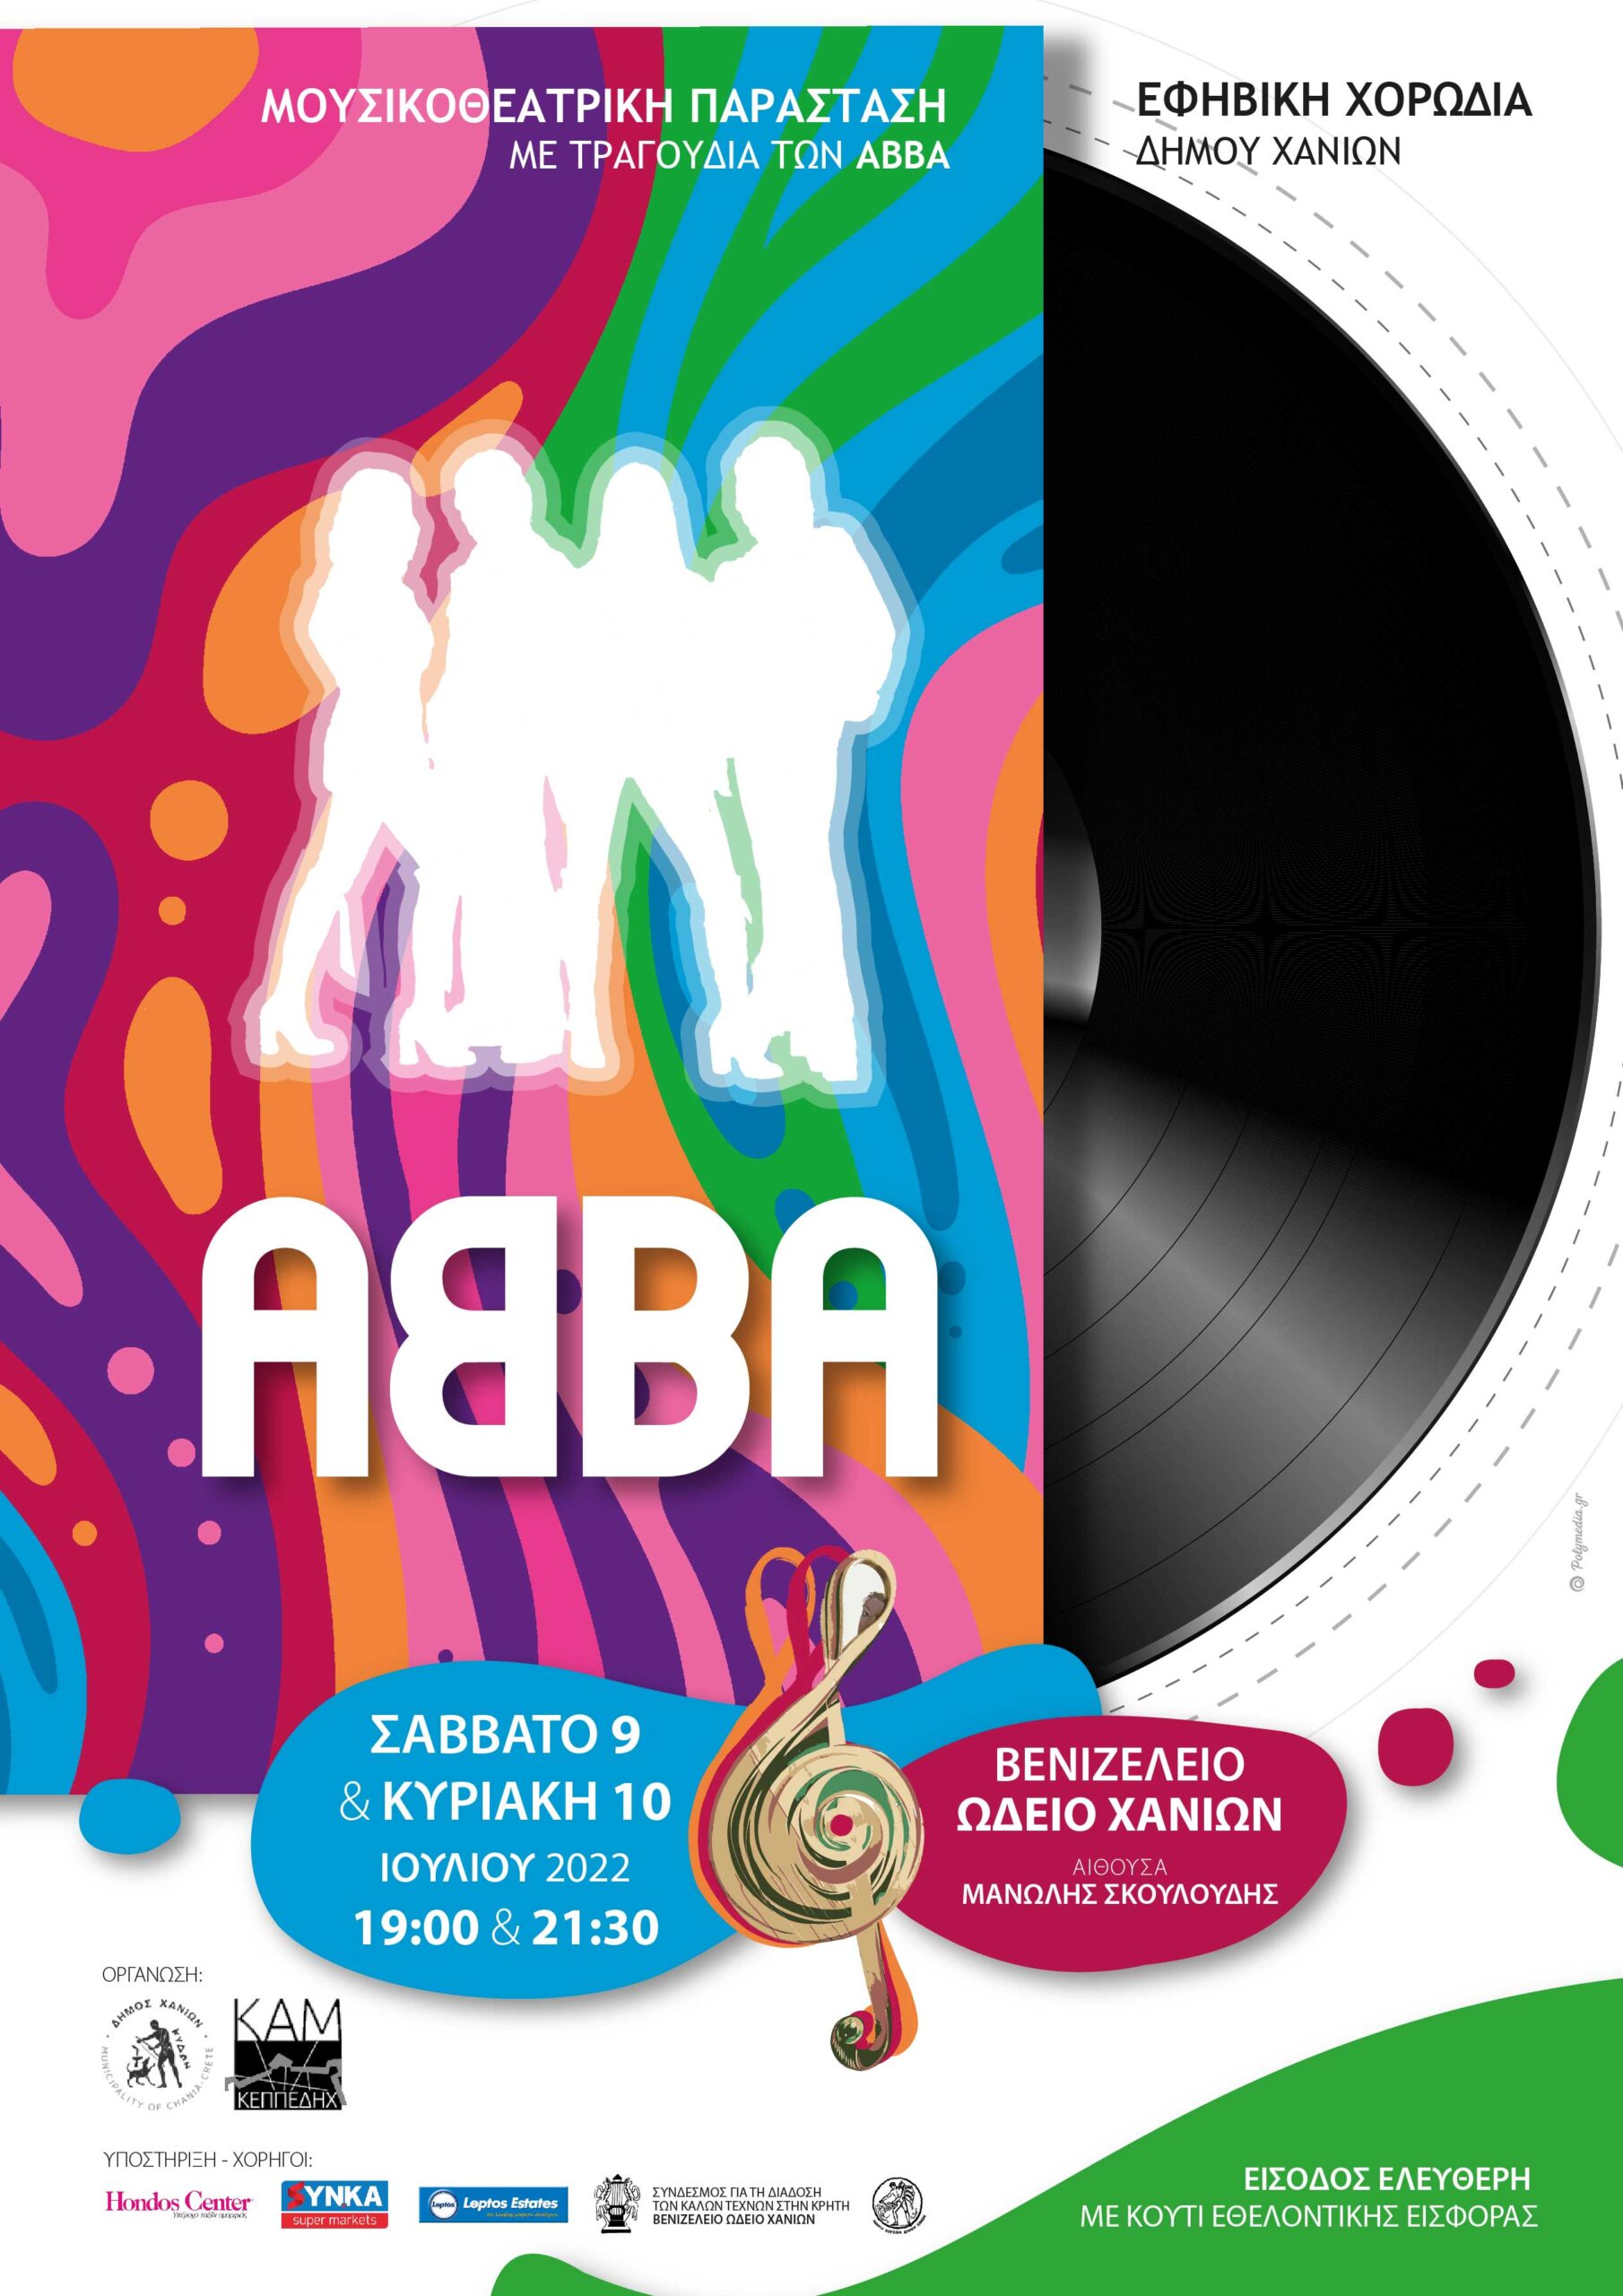 ABBA the musical